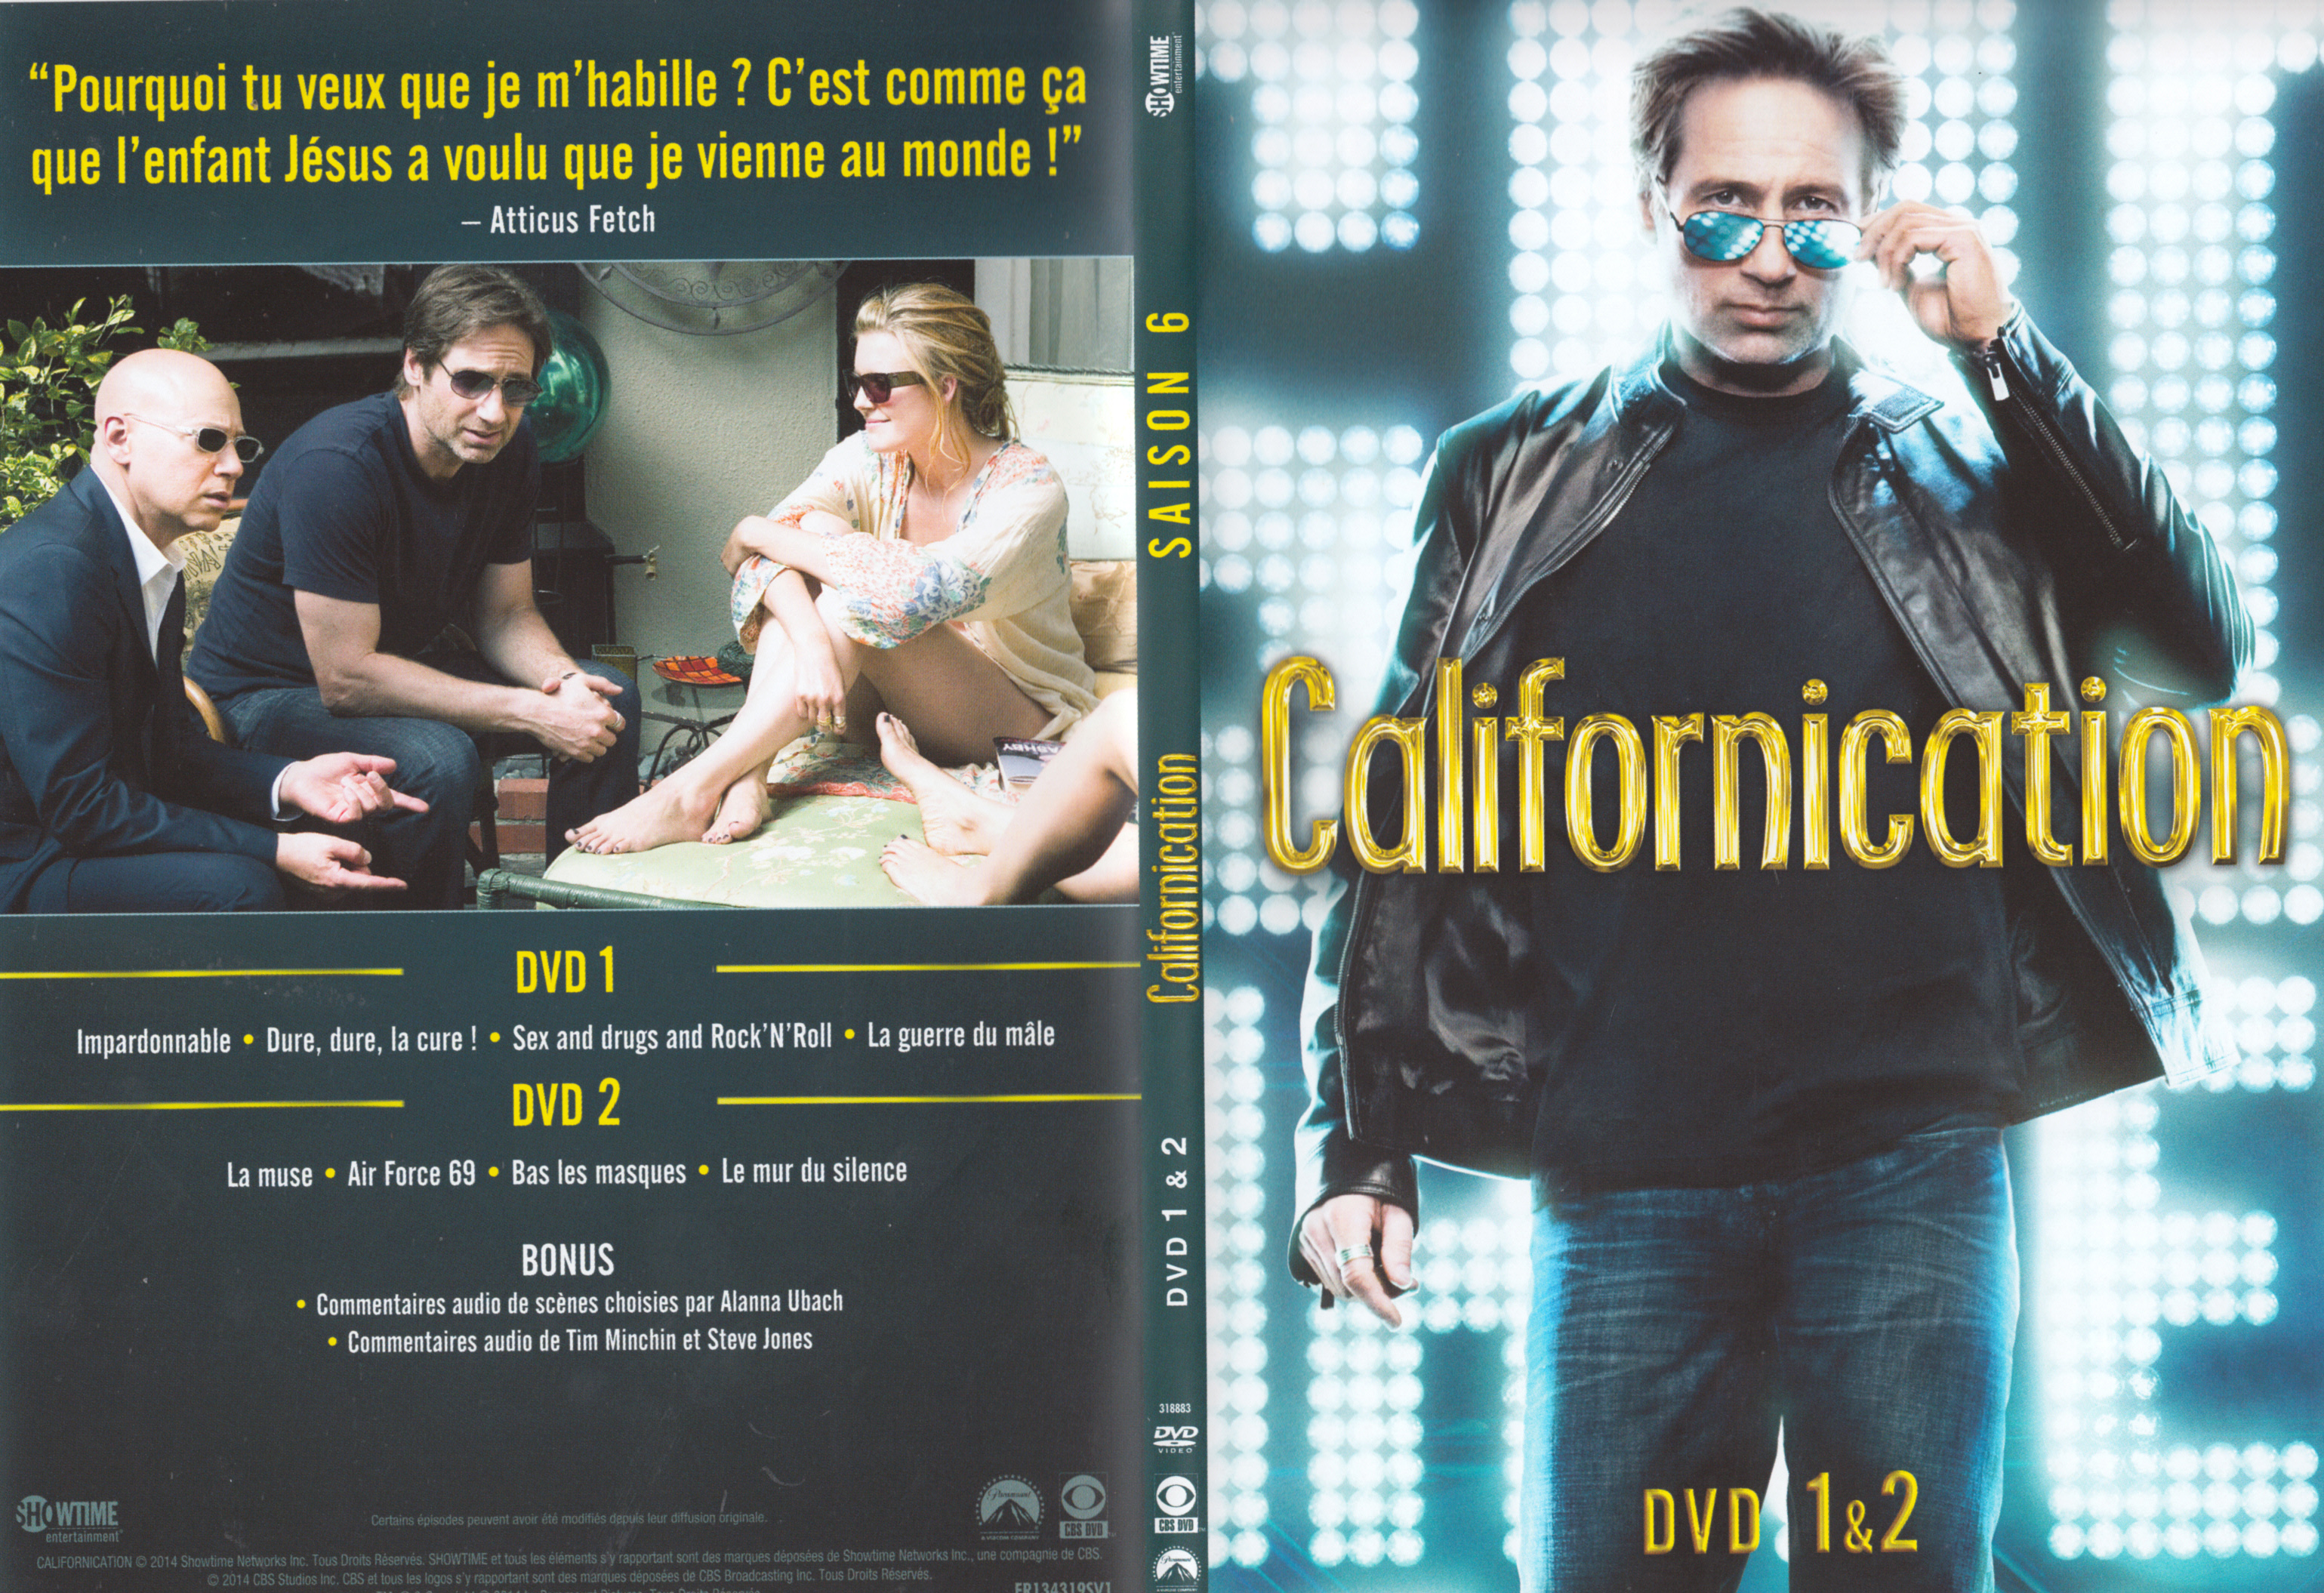 Jaquette DVD Californication saison 6 DVD 1